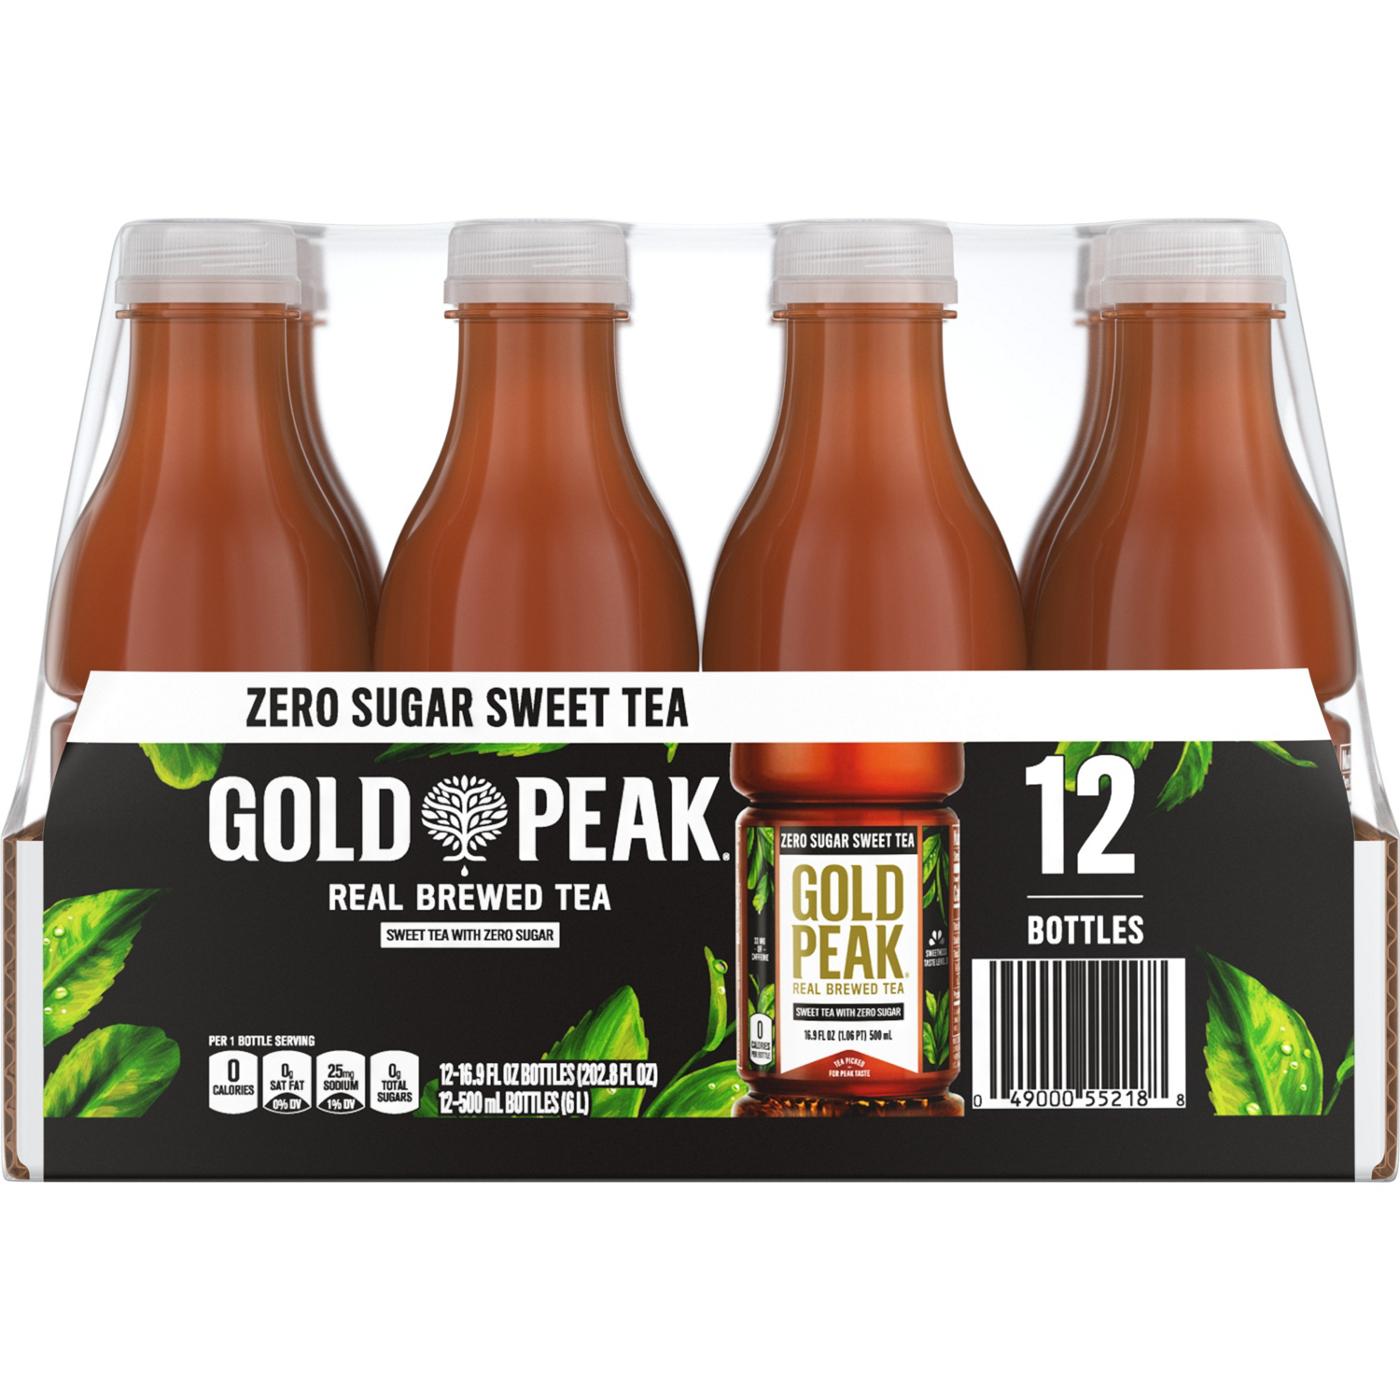 Gold peak Zero Sugar Sweet Tea Bottles 12 pk Bottles; image 1 of 4